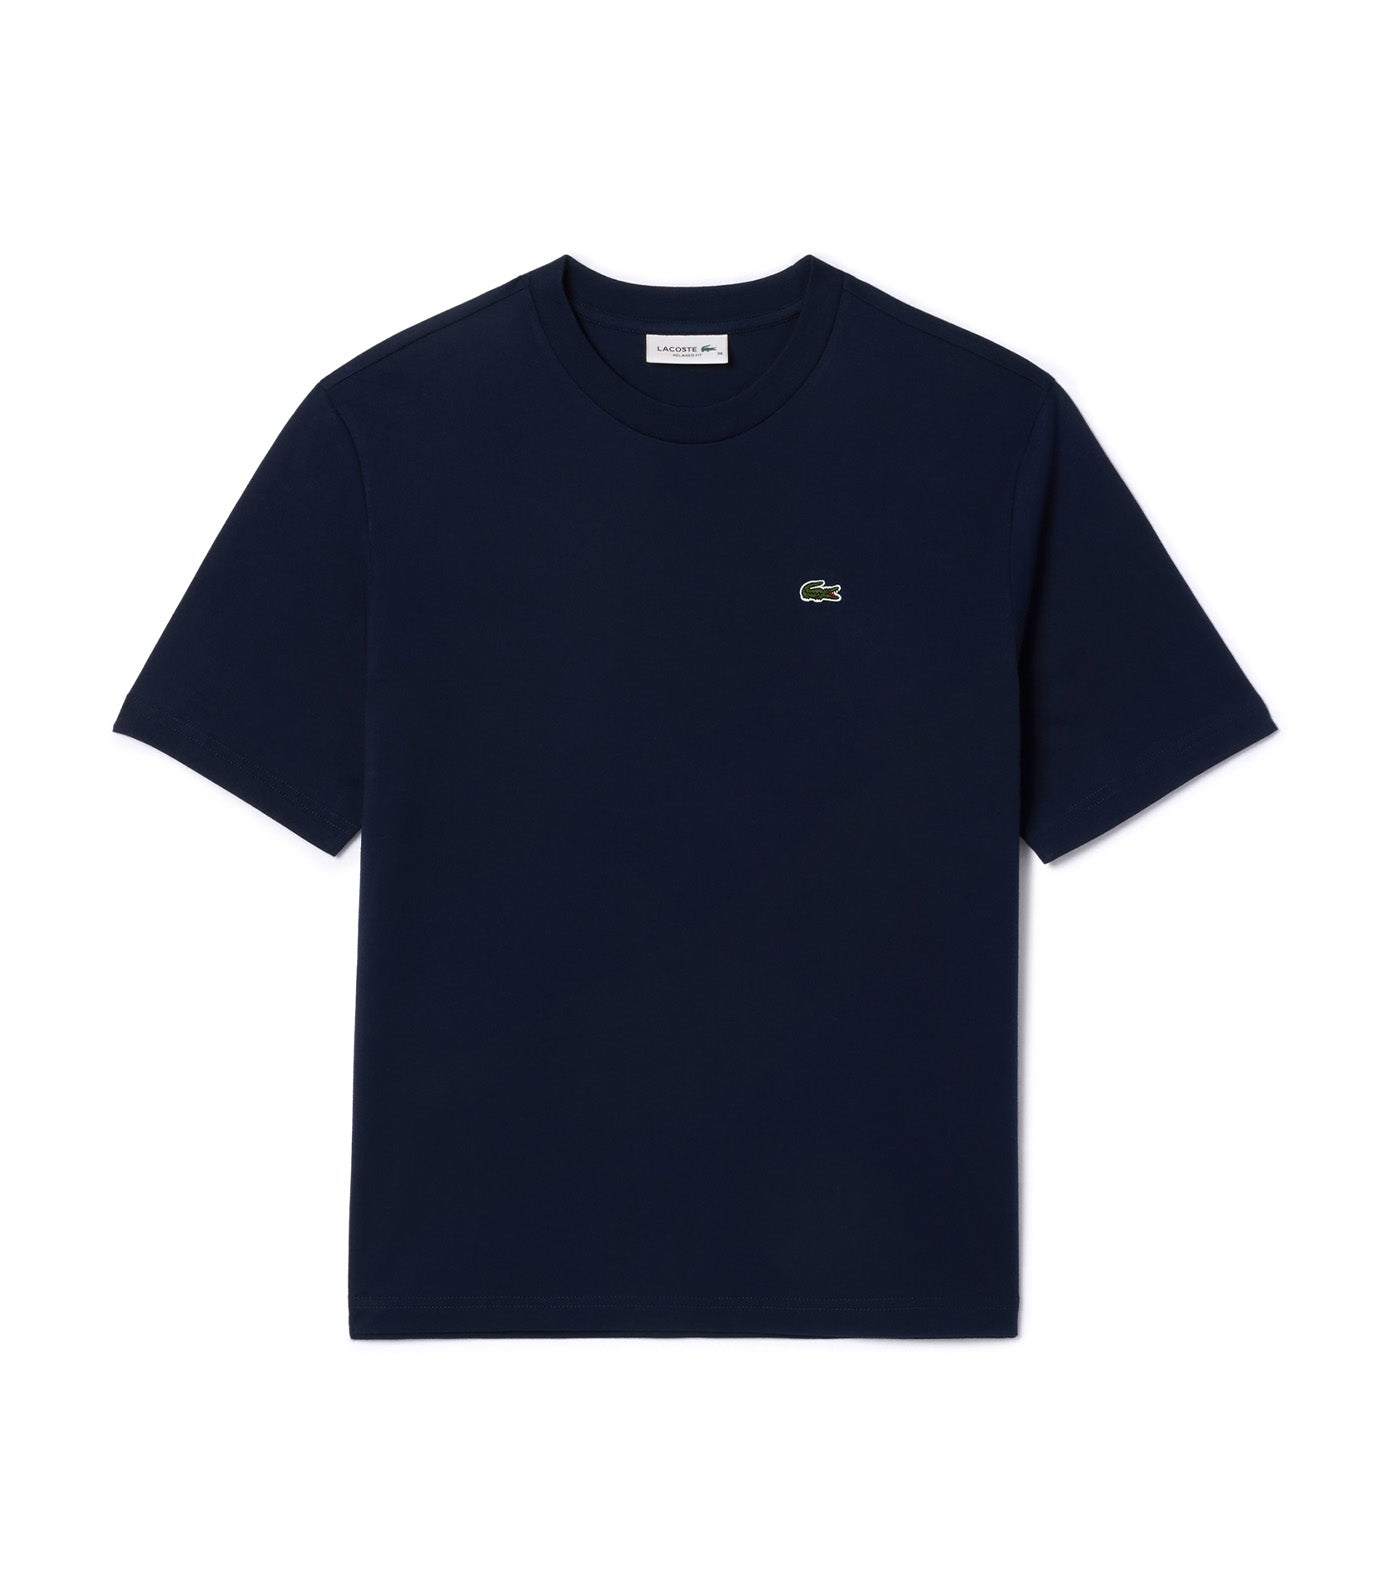 Relaxed Fit Lightweight Cotton Pima Jersey T-Shirt Navy Blue